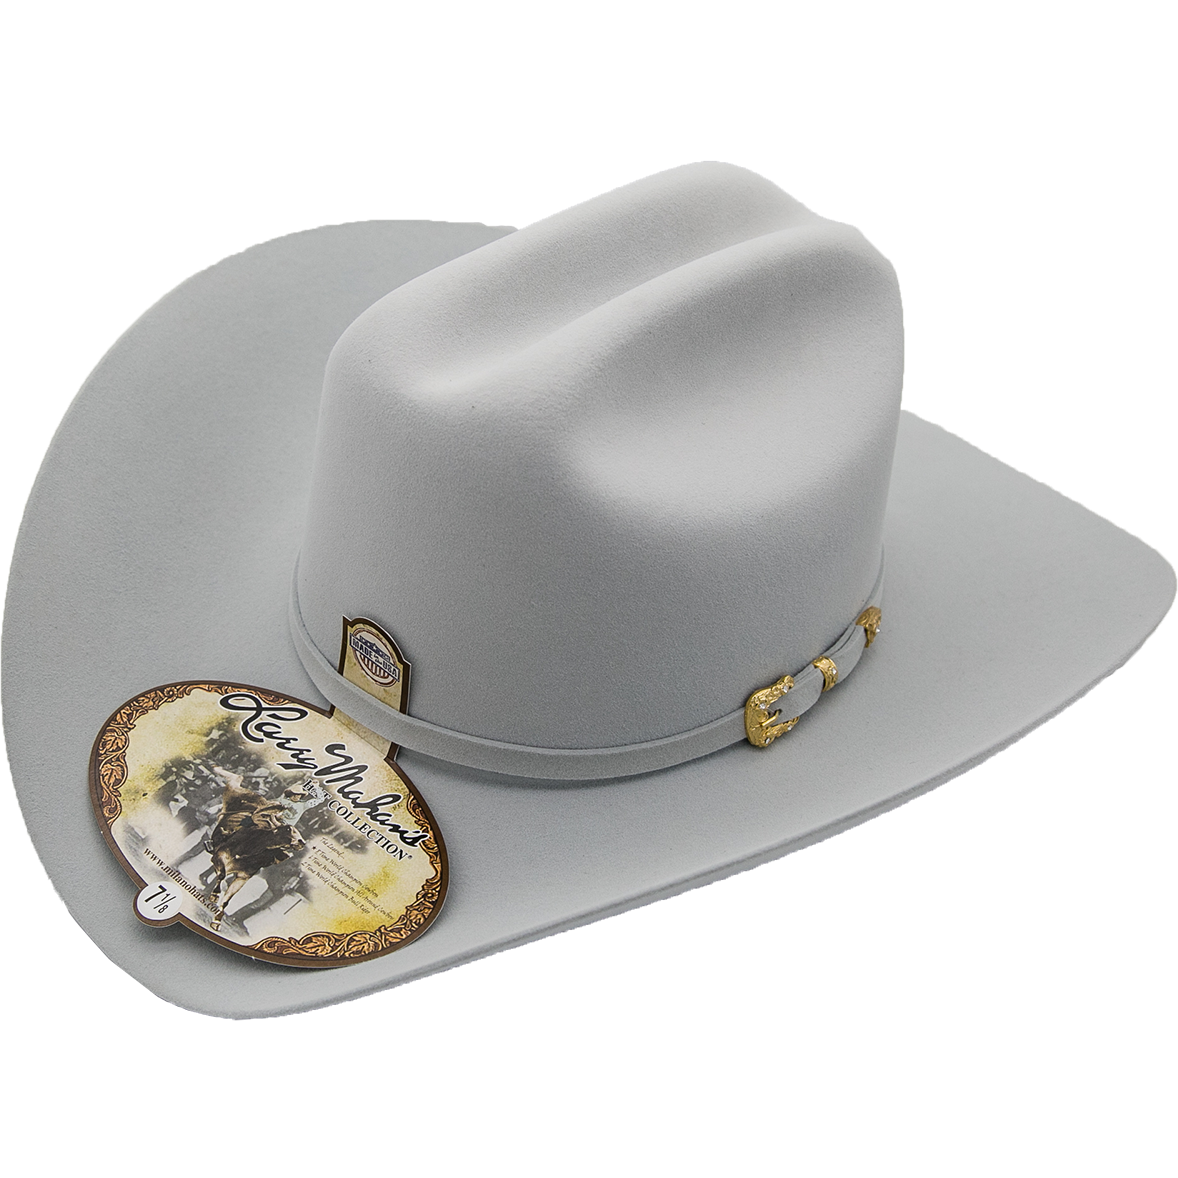 30x Larry Mahan Opulento Fur Felt Cowboy Hat Platinum - yeehawcowboy